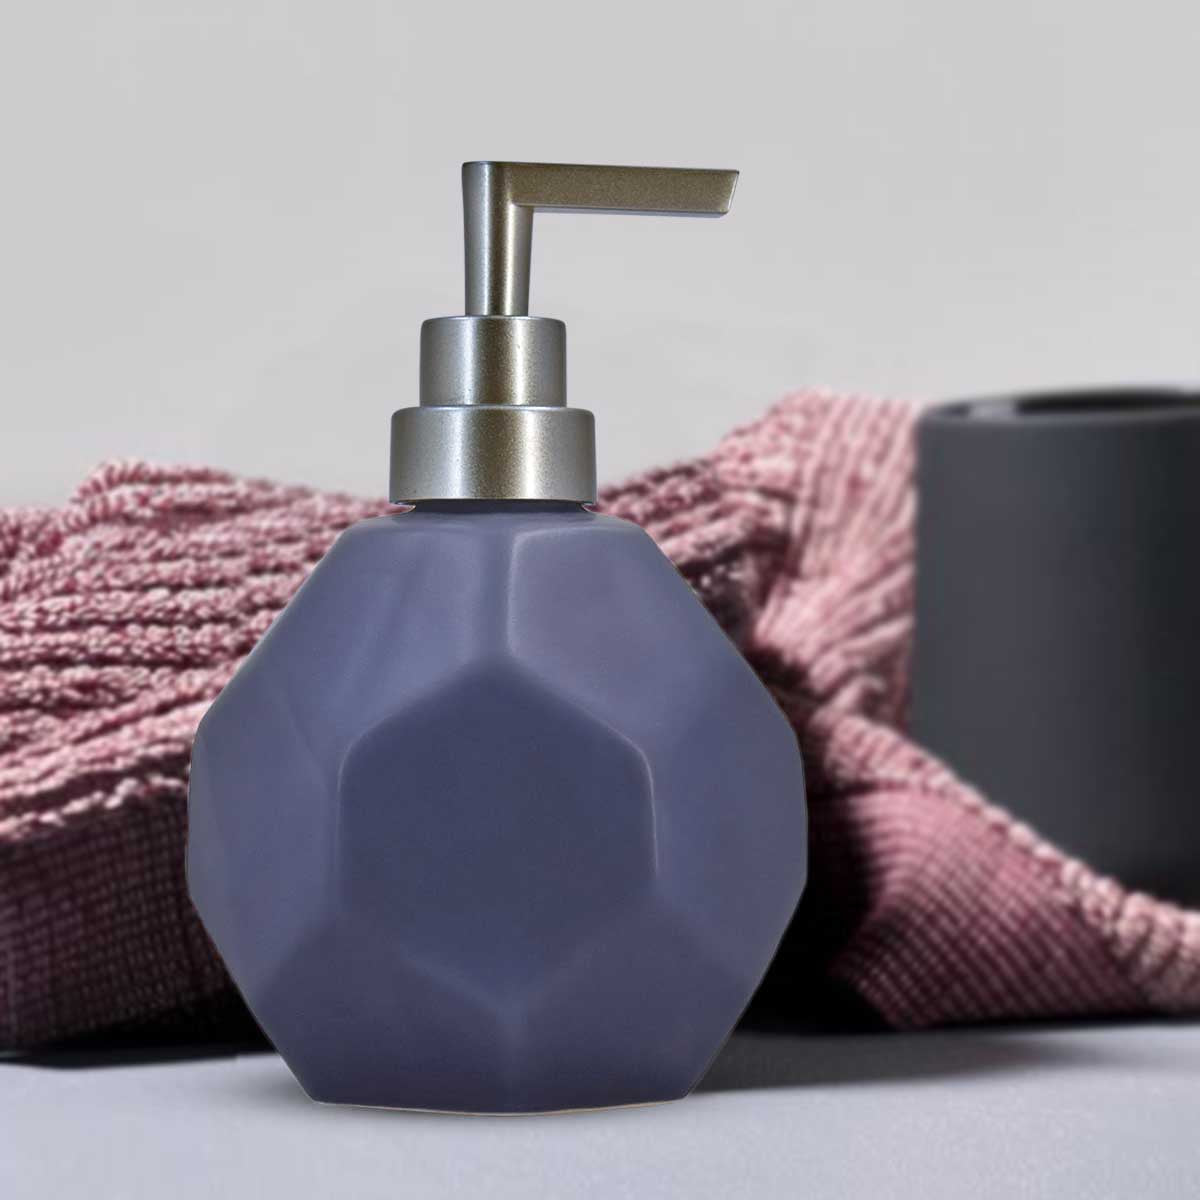 Kookee Ceramic Soap Dispenser for Bathroom handwash, refillable pump bottle for Kitchen hand wash basin, Set of 1, Blue (8022)